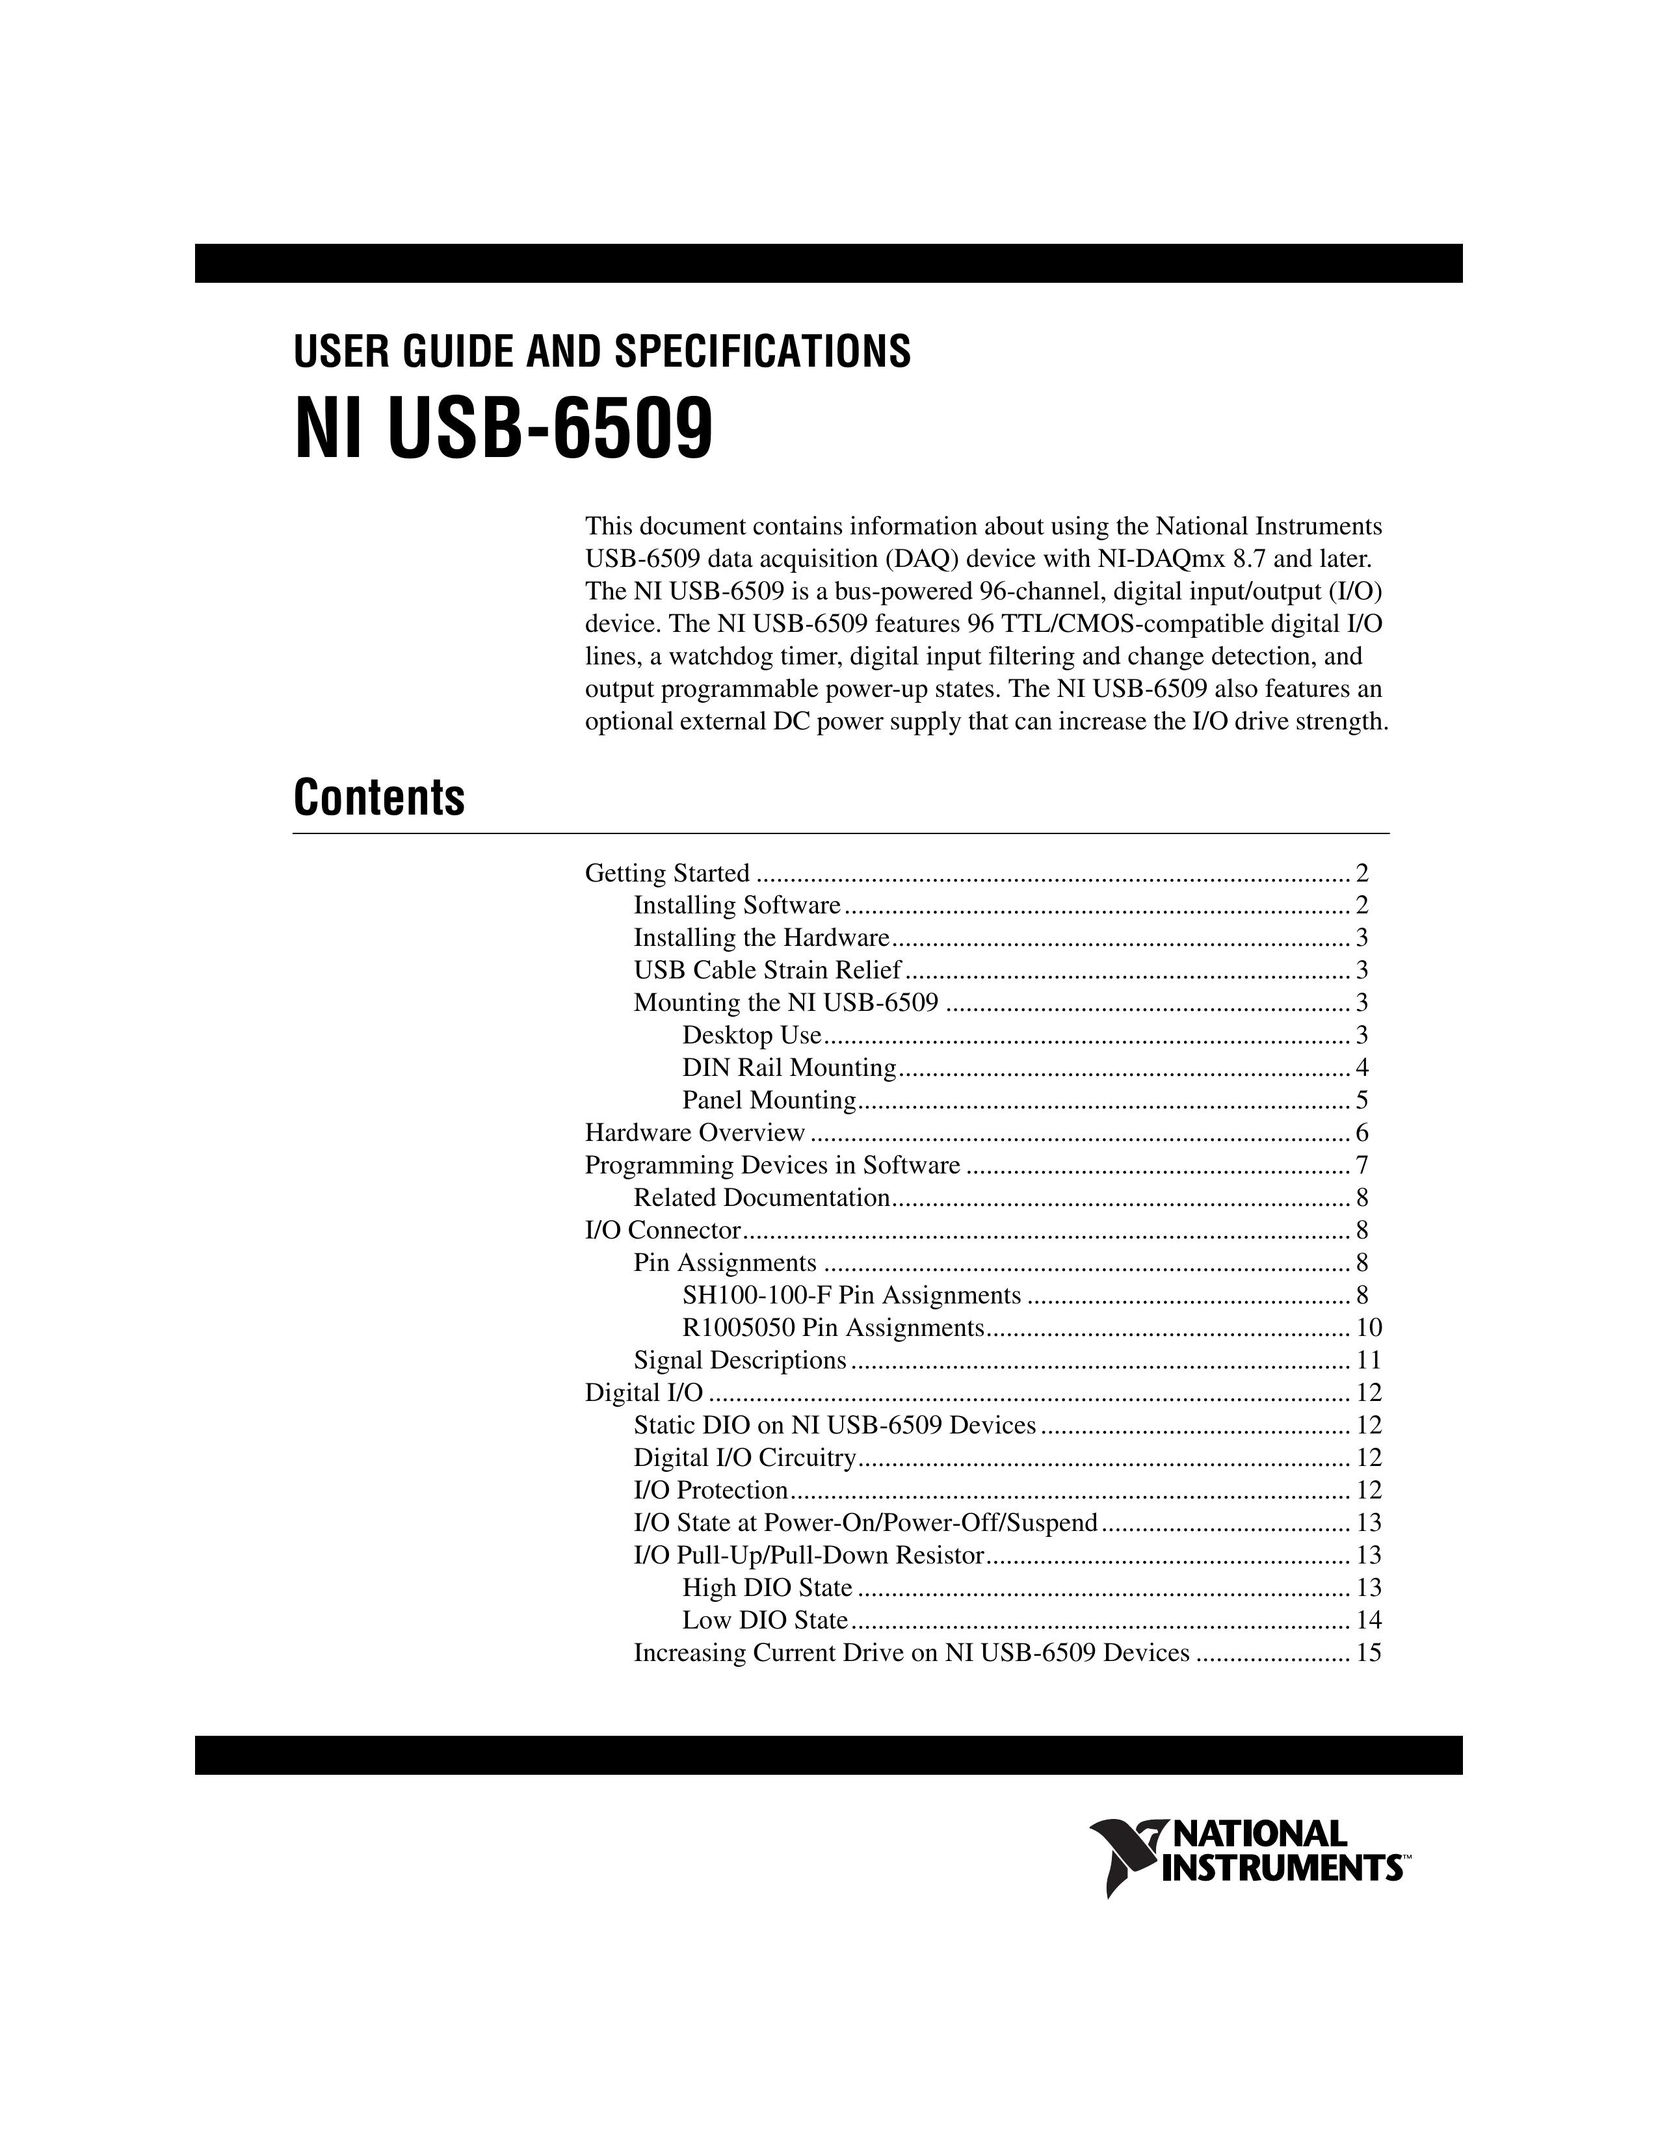 National Instruments NI USB-6509 Computer Drive User Manual